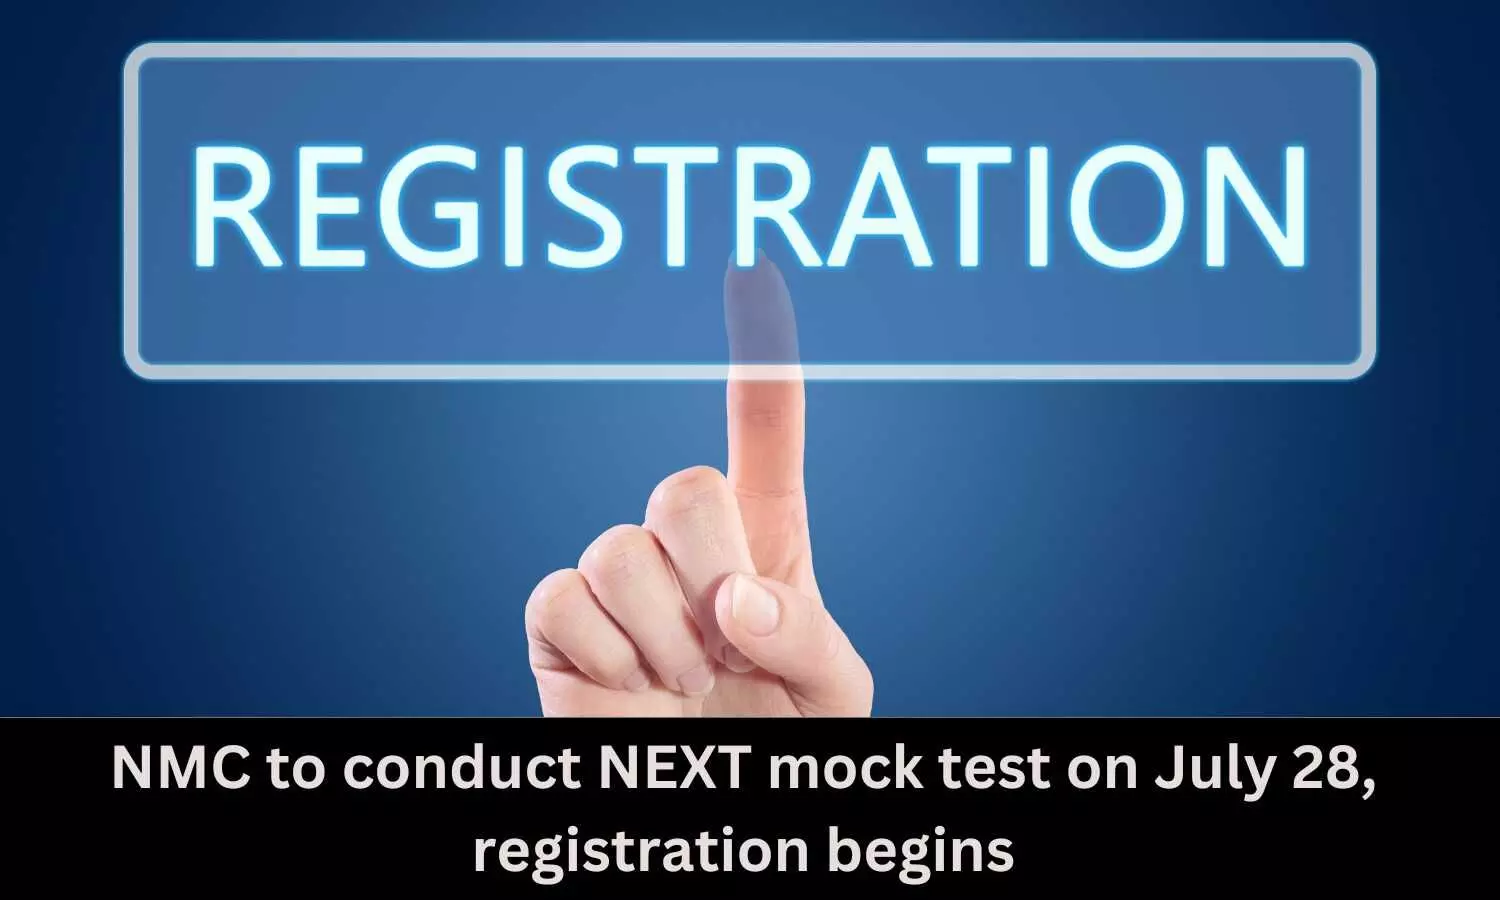 NEXT mock test on July 28, registration begins